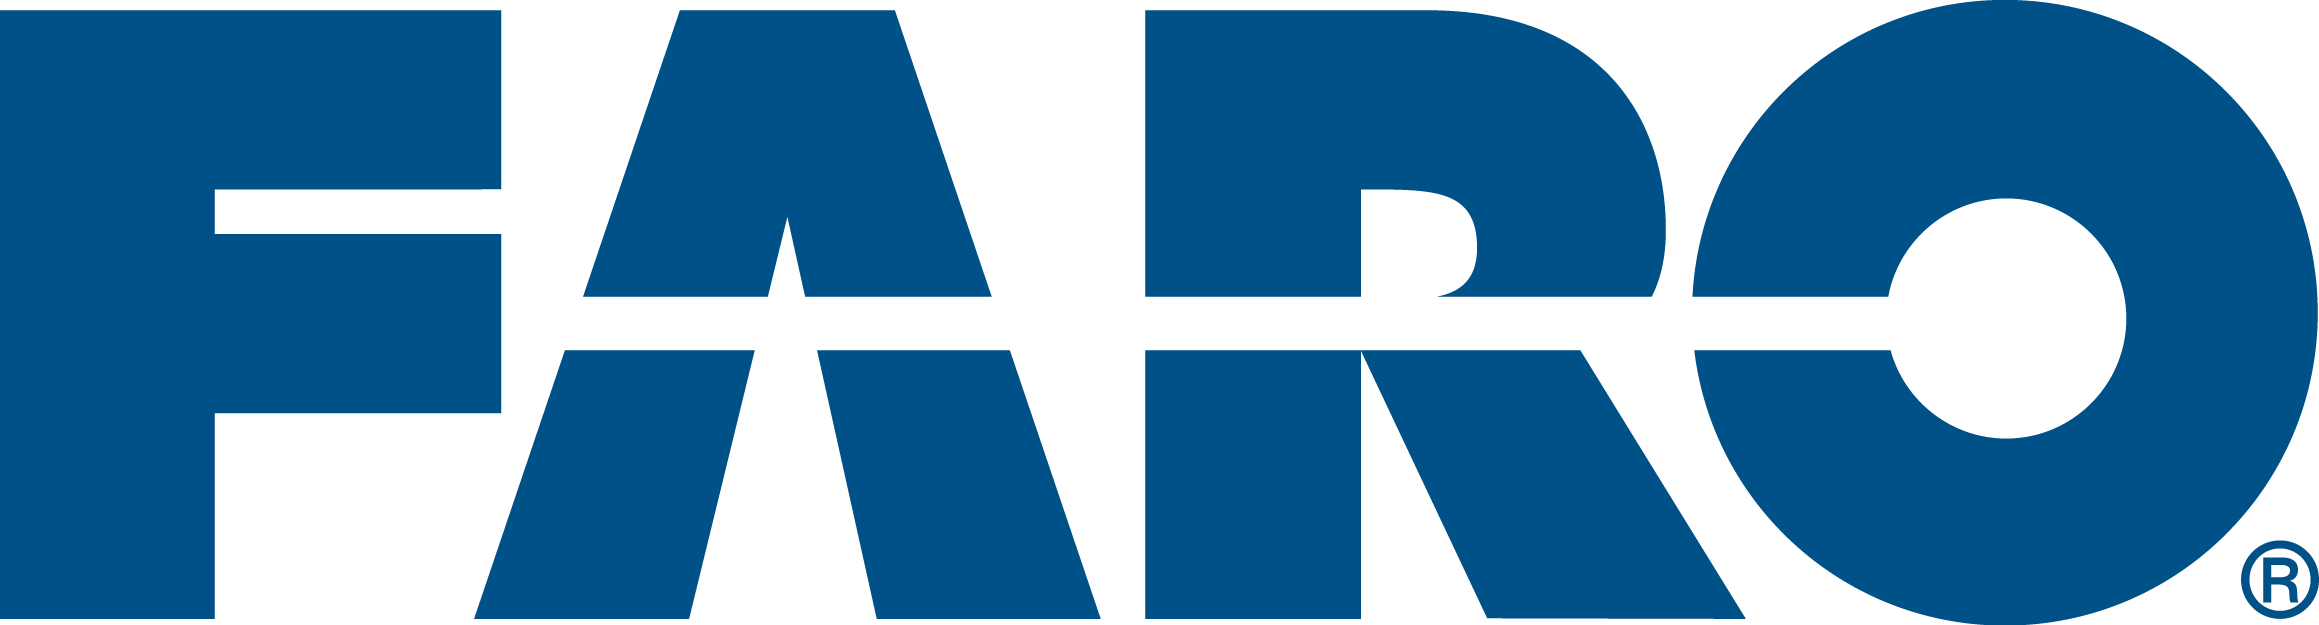 Logotipo Faro